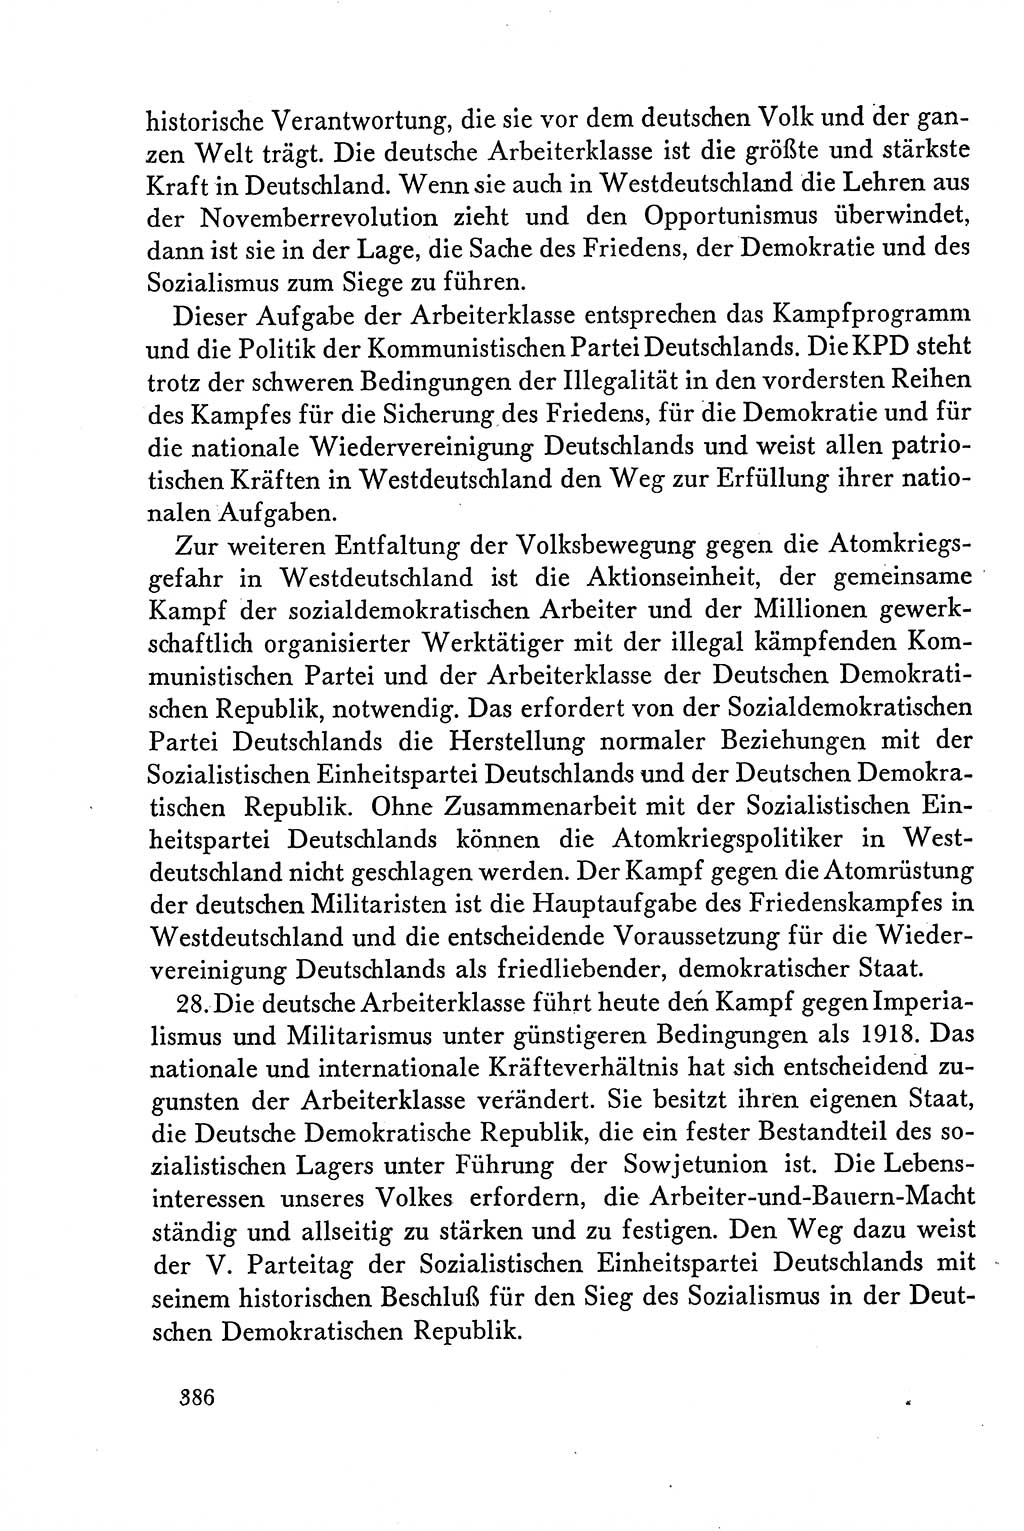 Dokumente der Sozialistischen Einheitspartei Deutschlands (SED) [Deutsche Demokratische Republik (DDR)] 1958-1959, Seite 386 (Dok. SED DDR 1958-1959, S. 386)